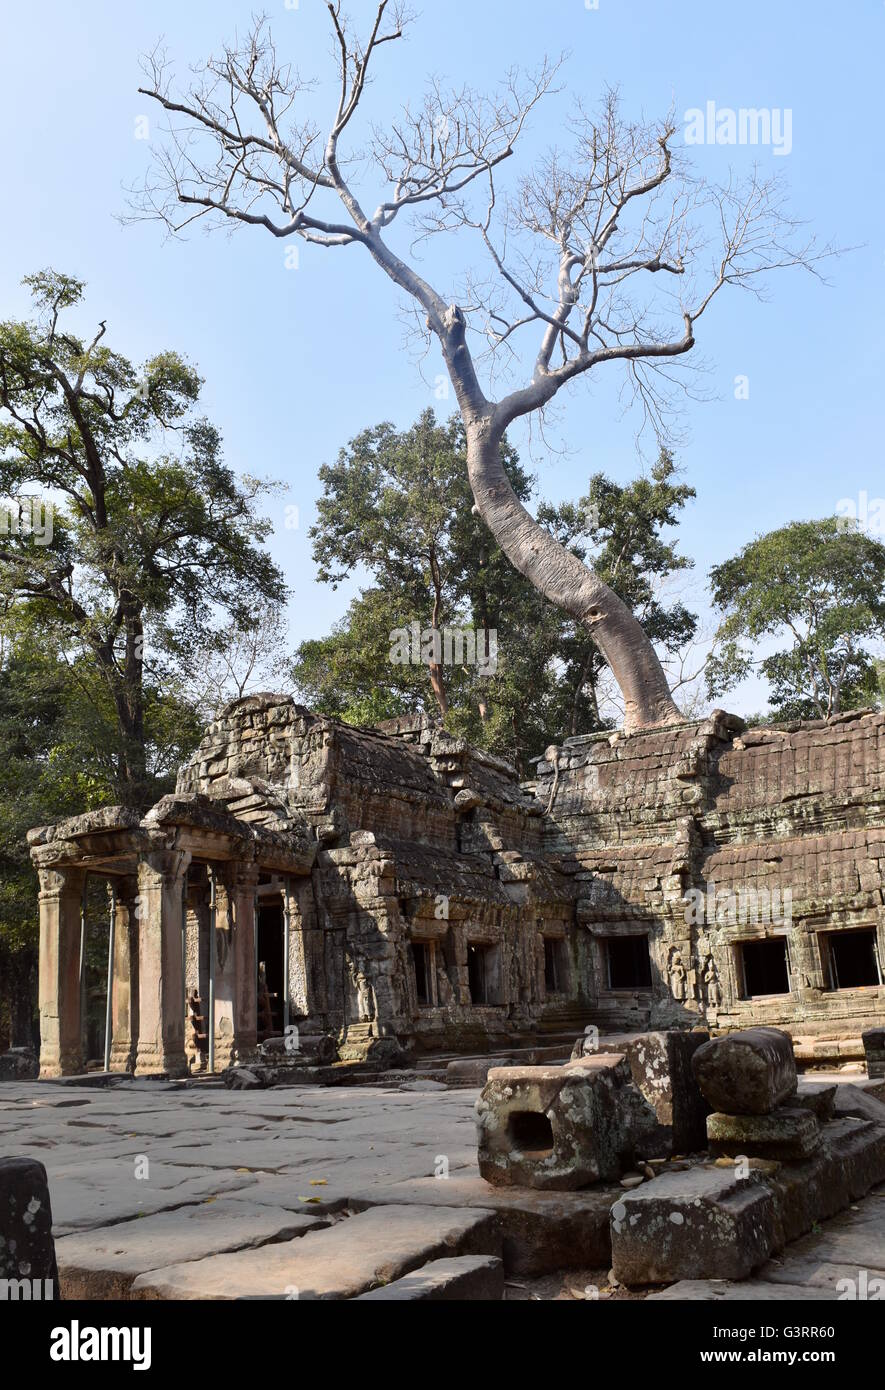 Ta Prohm ancient stone Buddhist temple in the jungle - Cambodia (vertical) Stock Photo